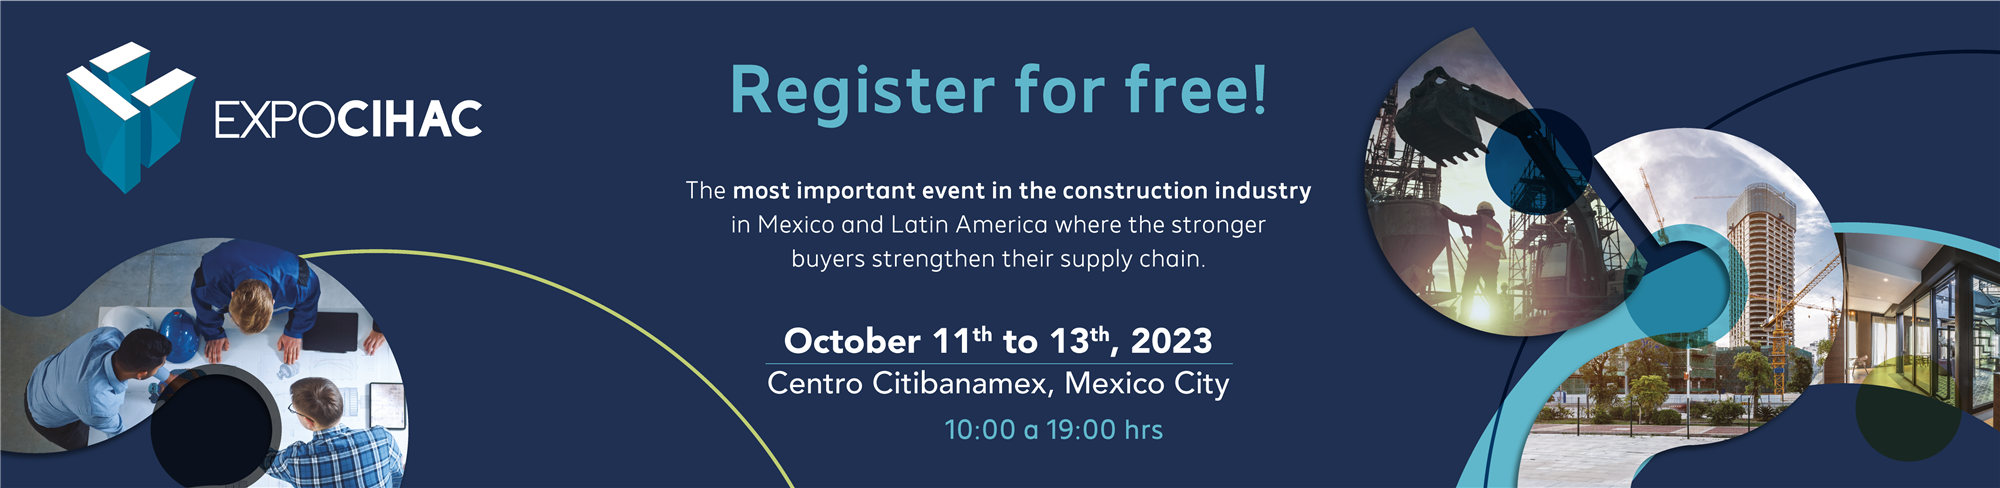 EXPO CIHAC 2023 México convite da Dozan Mosaic And Tiles